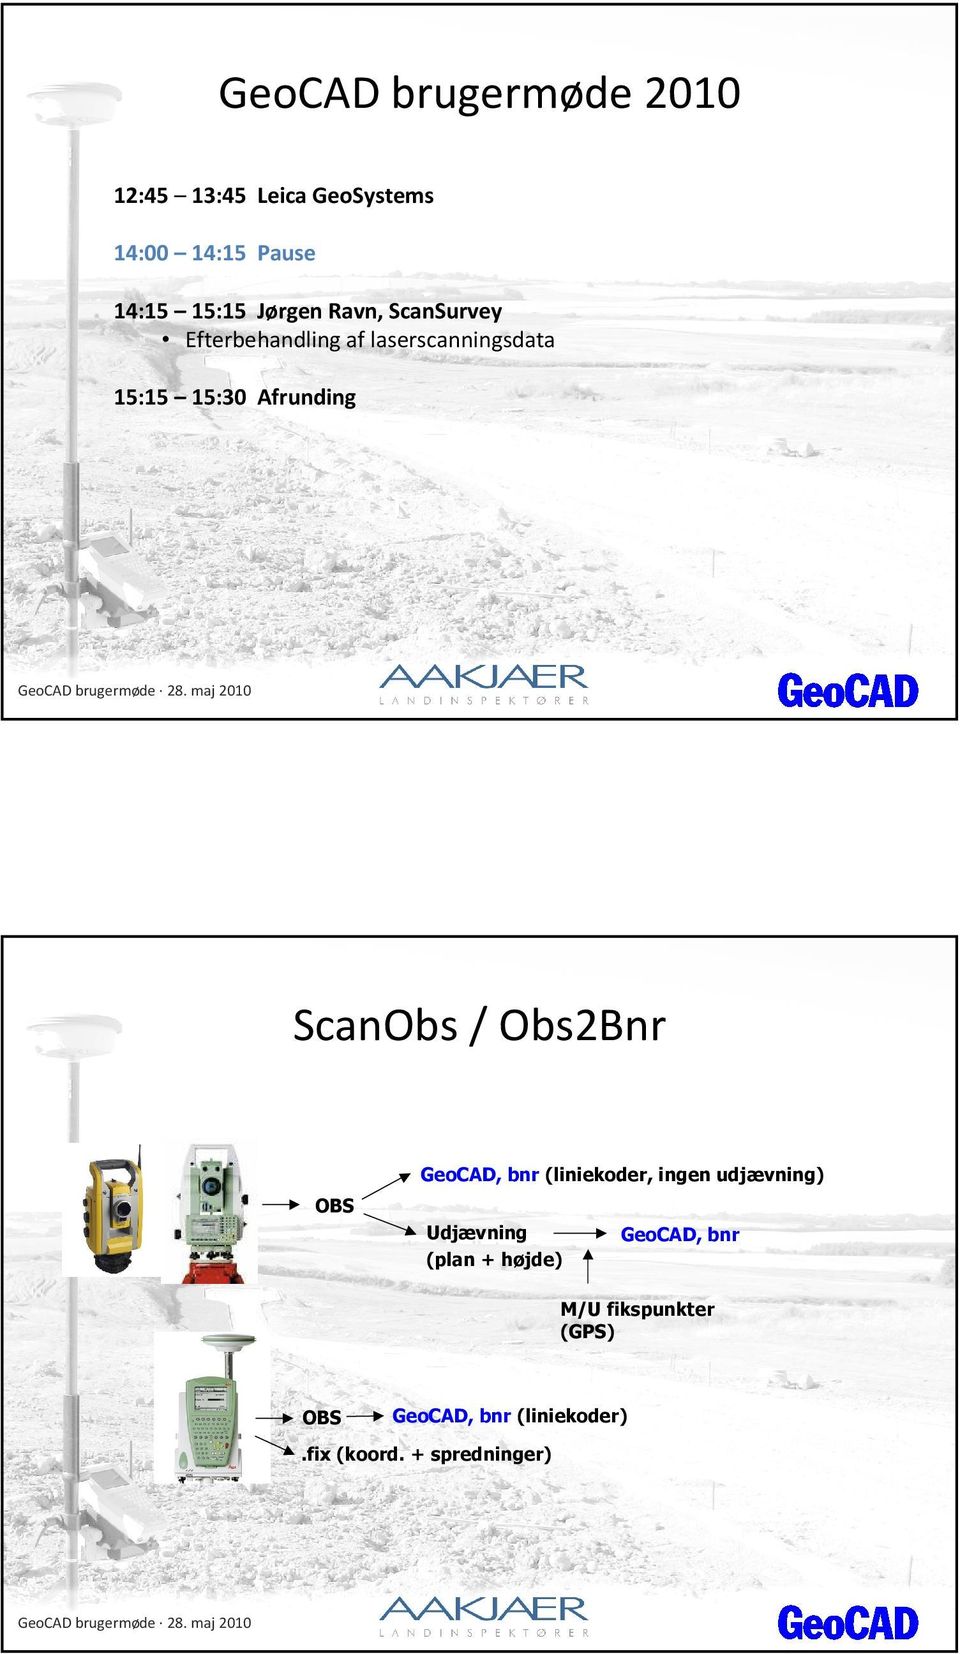 ScanObs/ Obs2Bnr OBS GeoCAD, bnr (liniekoder, ingen udjævning) Udjævning (plan +